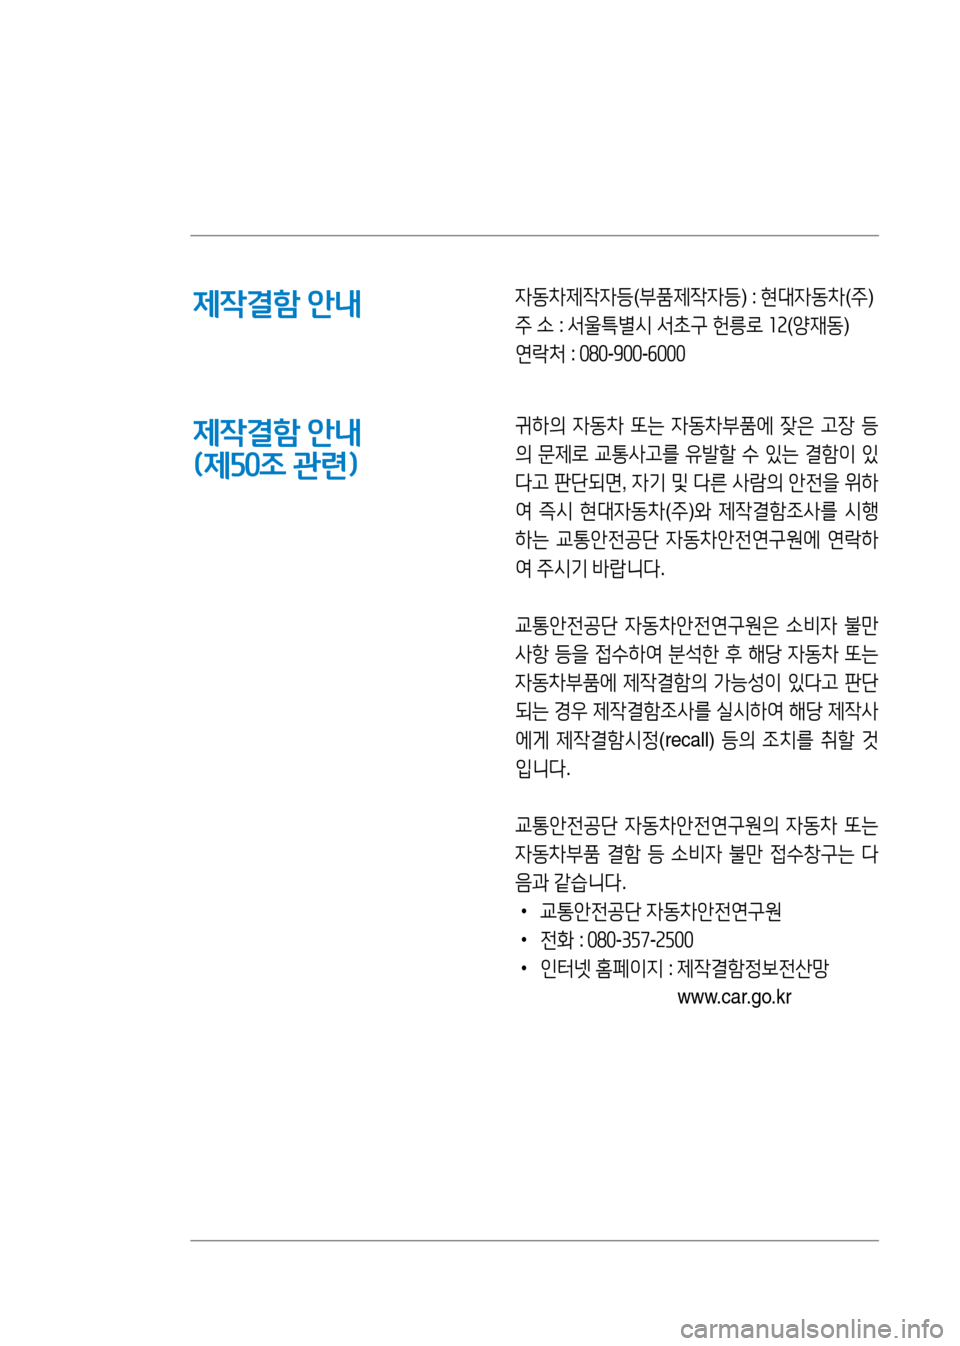 Hyundai Genesis 2016  EQ900 HI - 사용 설명서 (in Korean) 제작결함 안내
제작결함 안내 
(제50조 관련)
자동차제작자등(부품제작자등) : 현대자동차(주)
주 소 : 서울특별시 서초구 헌릉로 12(양재동)
연락처 : 080-